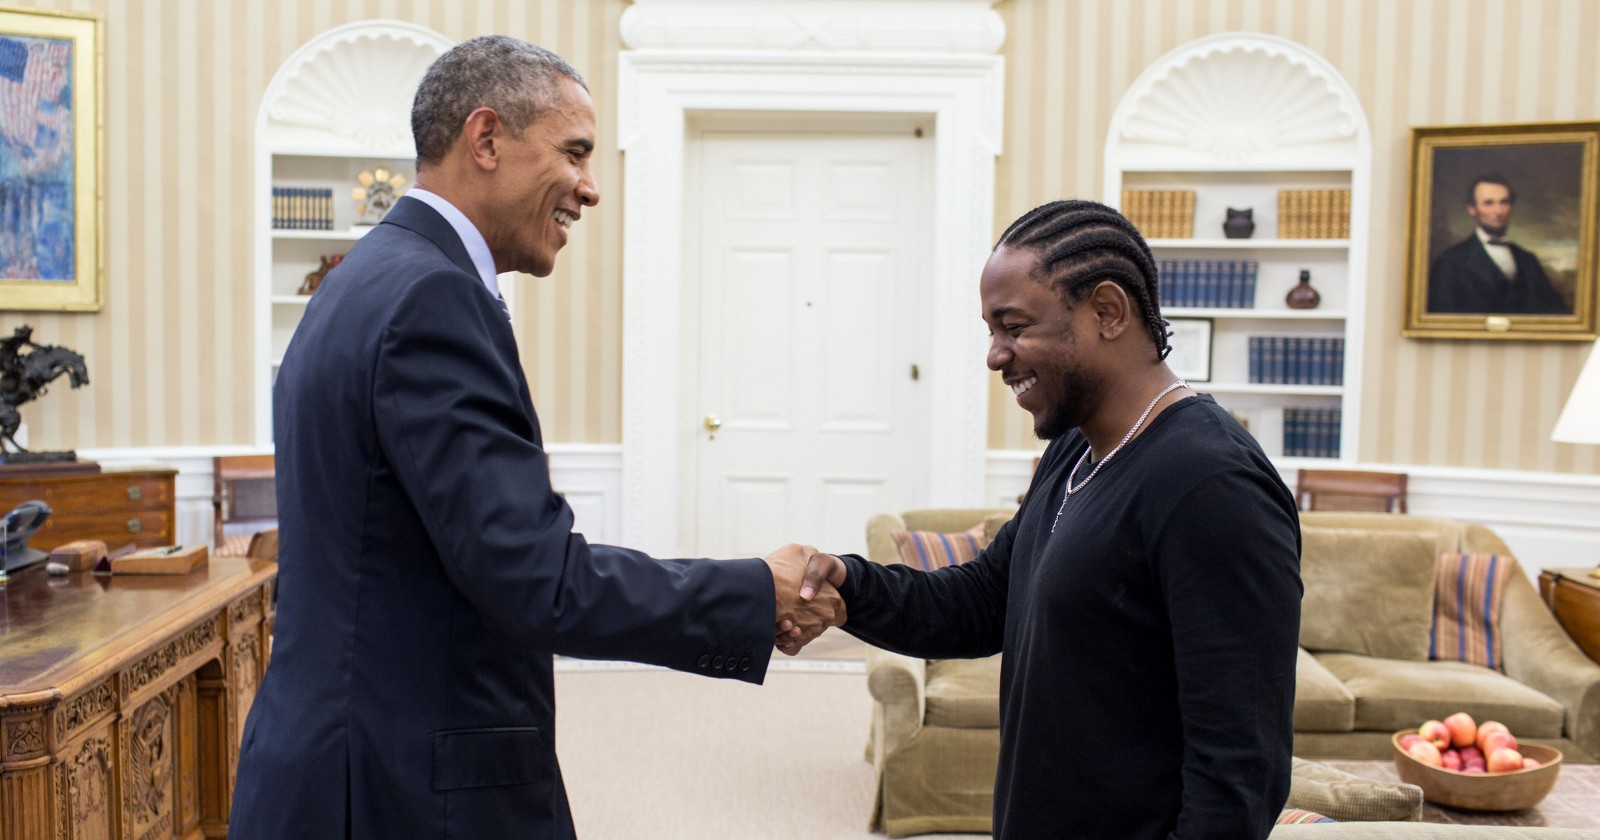 Cựu tổng thống Mỹ Barack Obama mới công bố các bài hát yêu thích, trong đó có nhiều bài thuộc thể loại Hip Hop